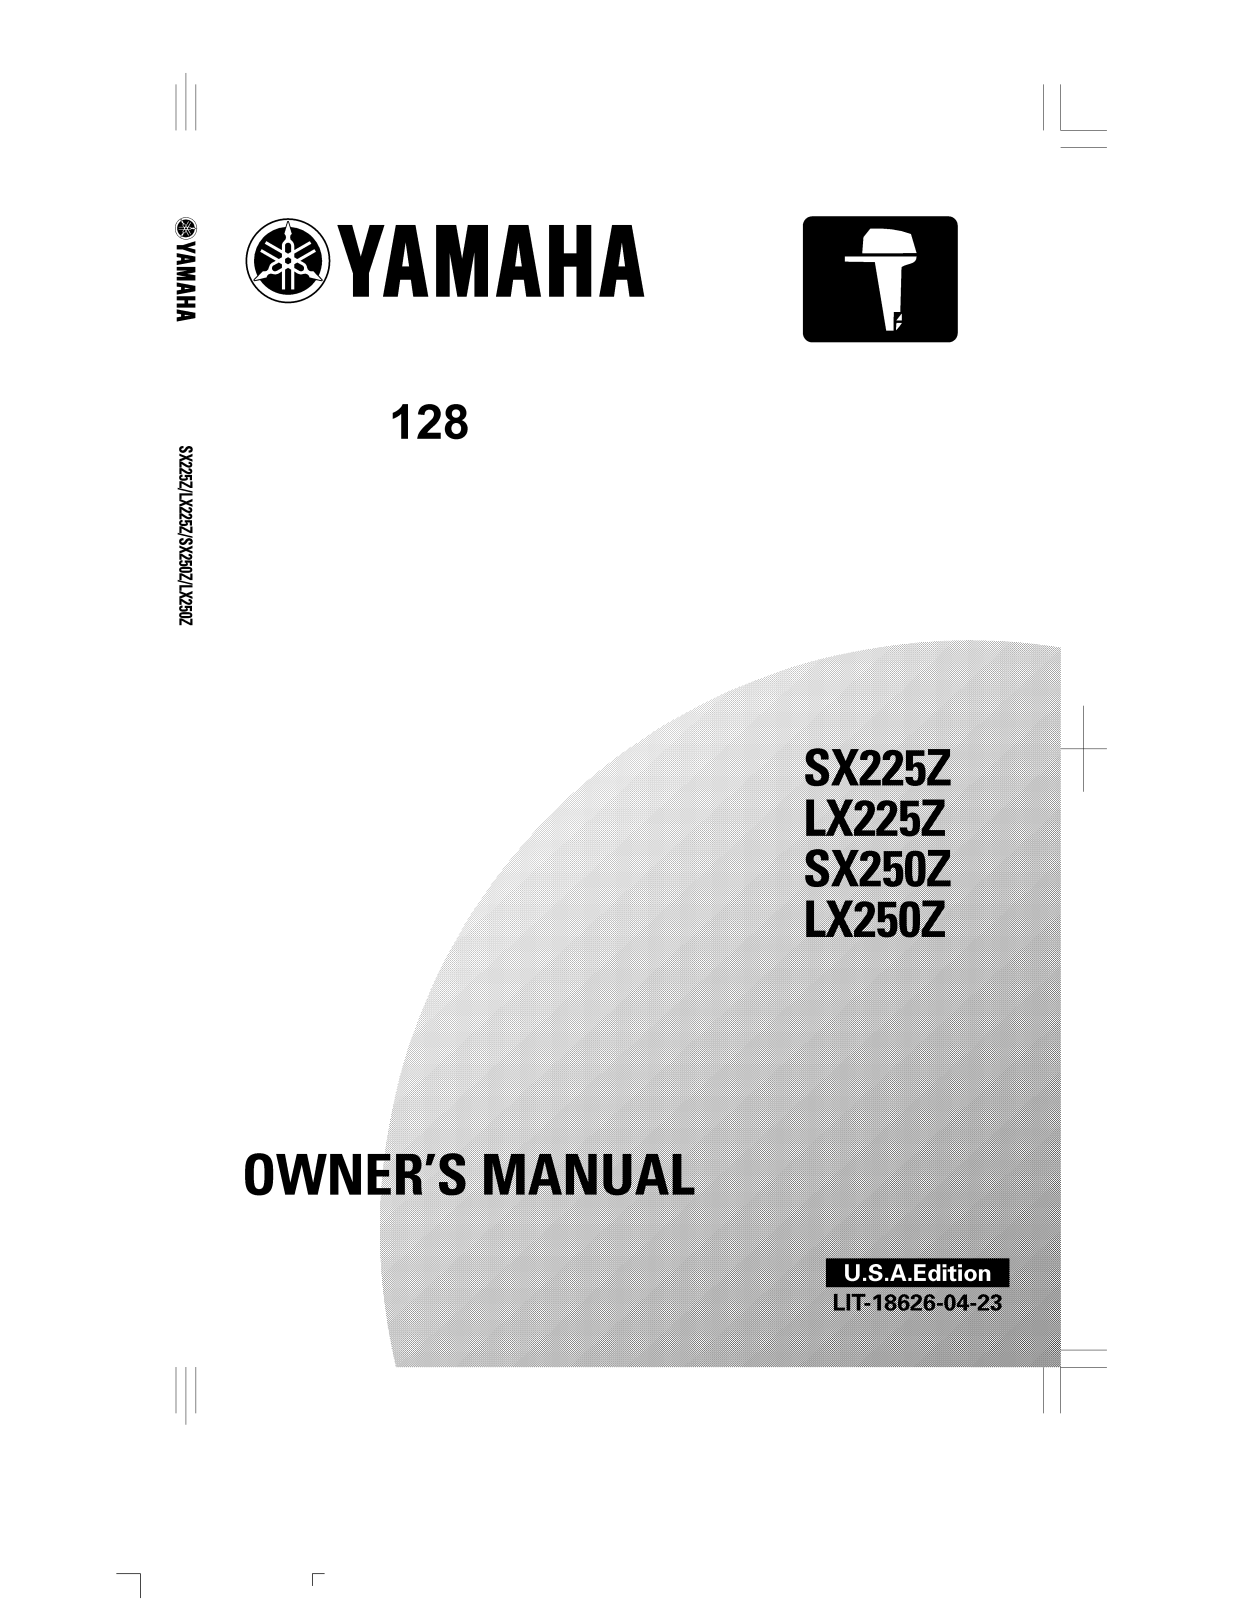 Yamaha sx225z, lx225z, sx250z, lx250z User Manual